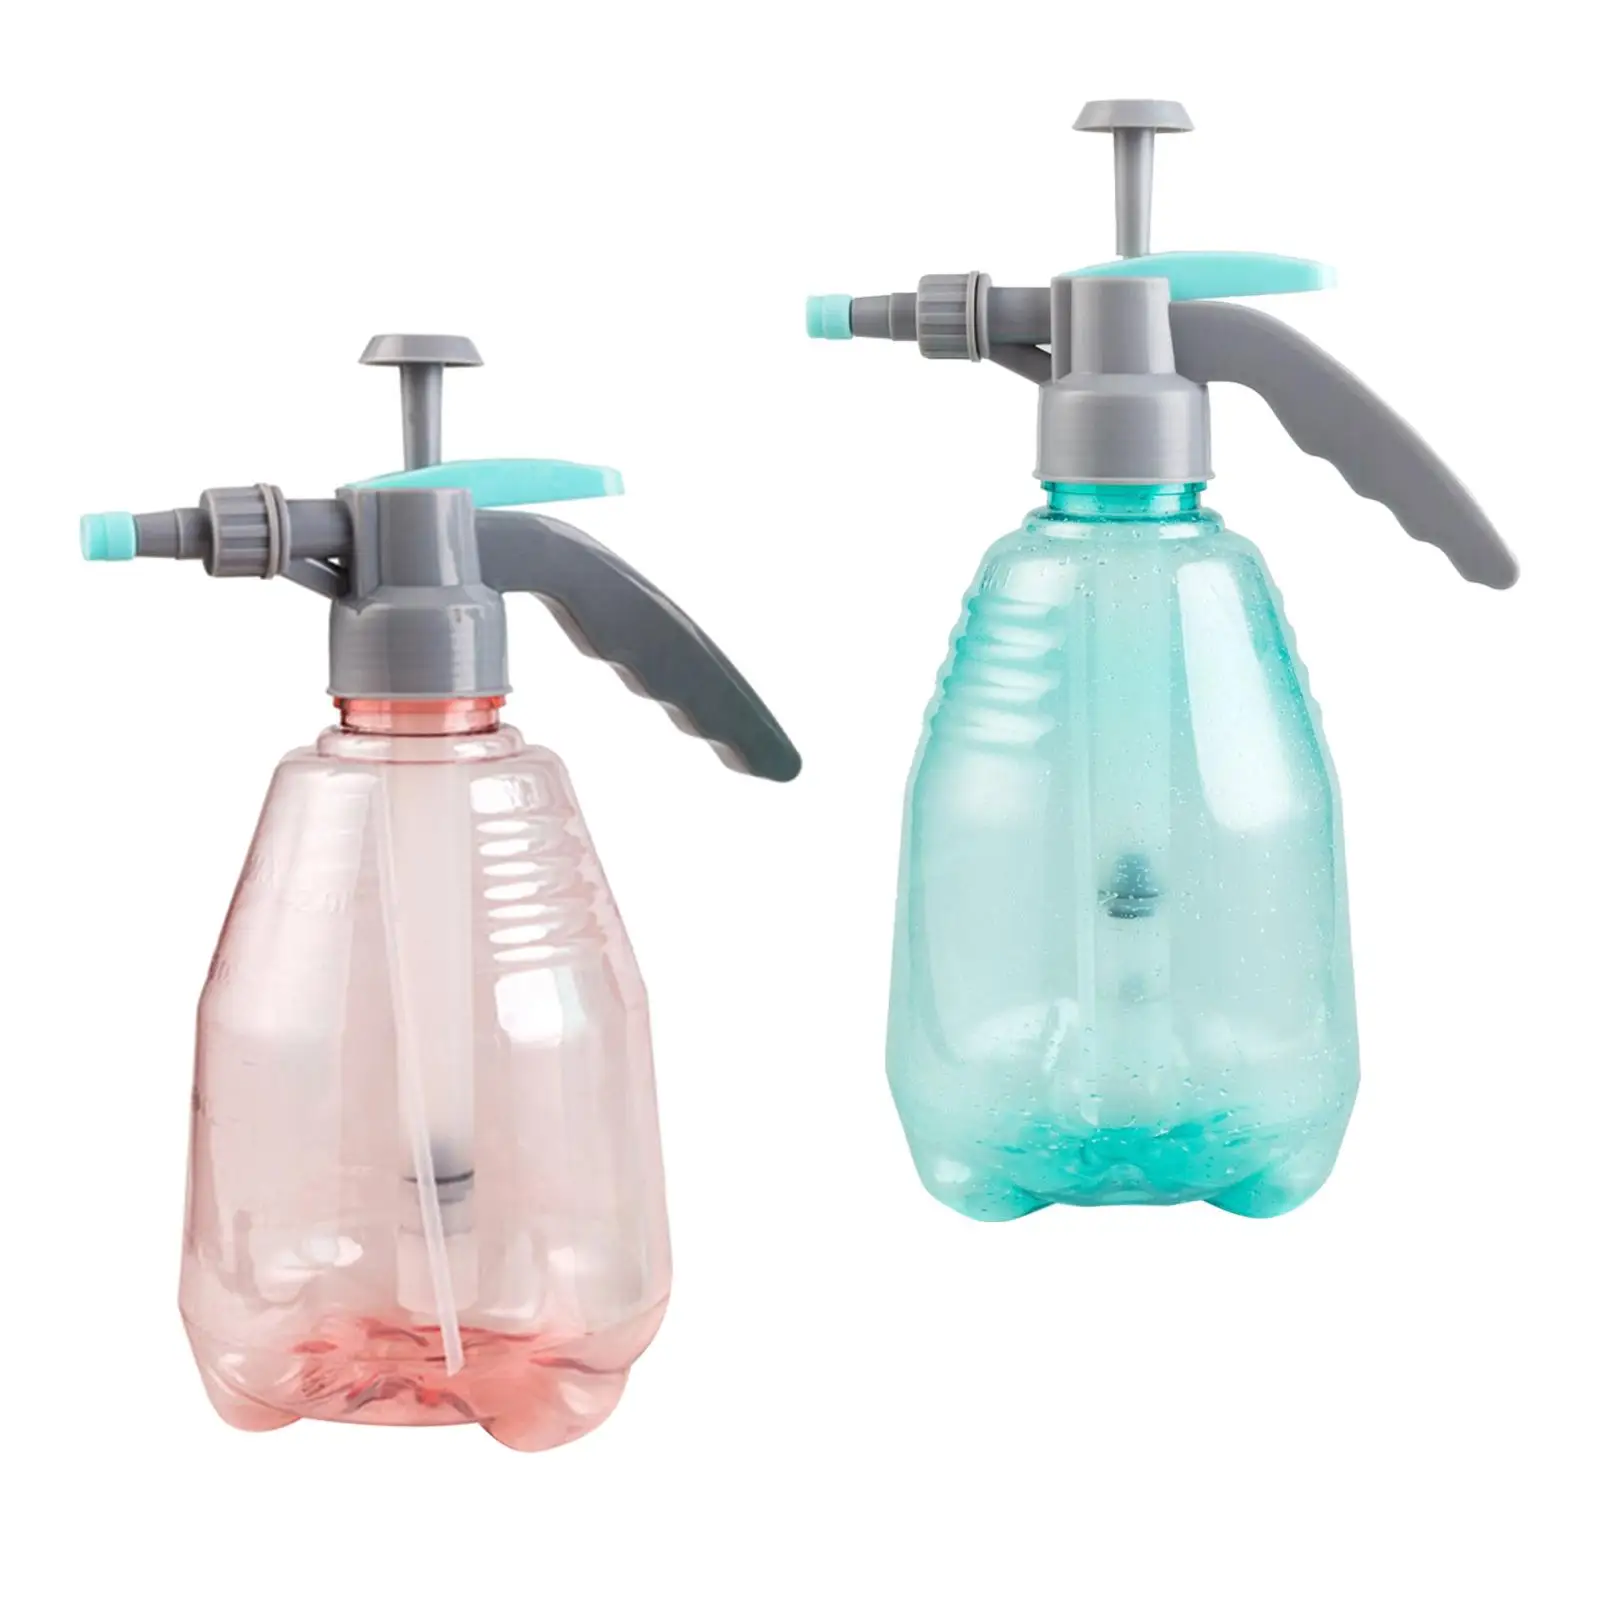 Garden Pump Sprayer Spray Bottle Water Bottle Lightweight 1.5L for Pets Indoor Plants Car Washing Gardening Home Cleaning